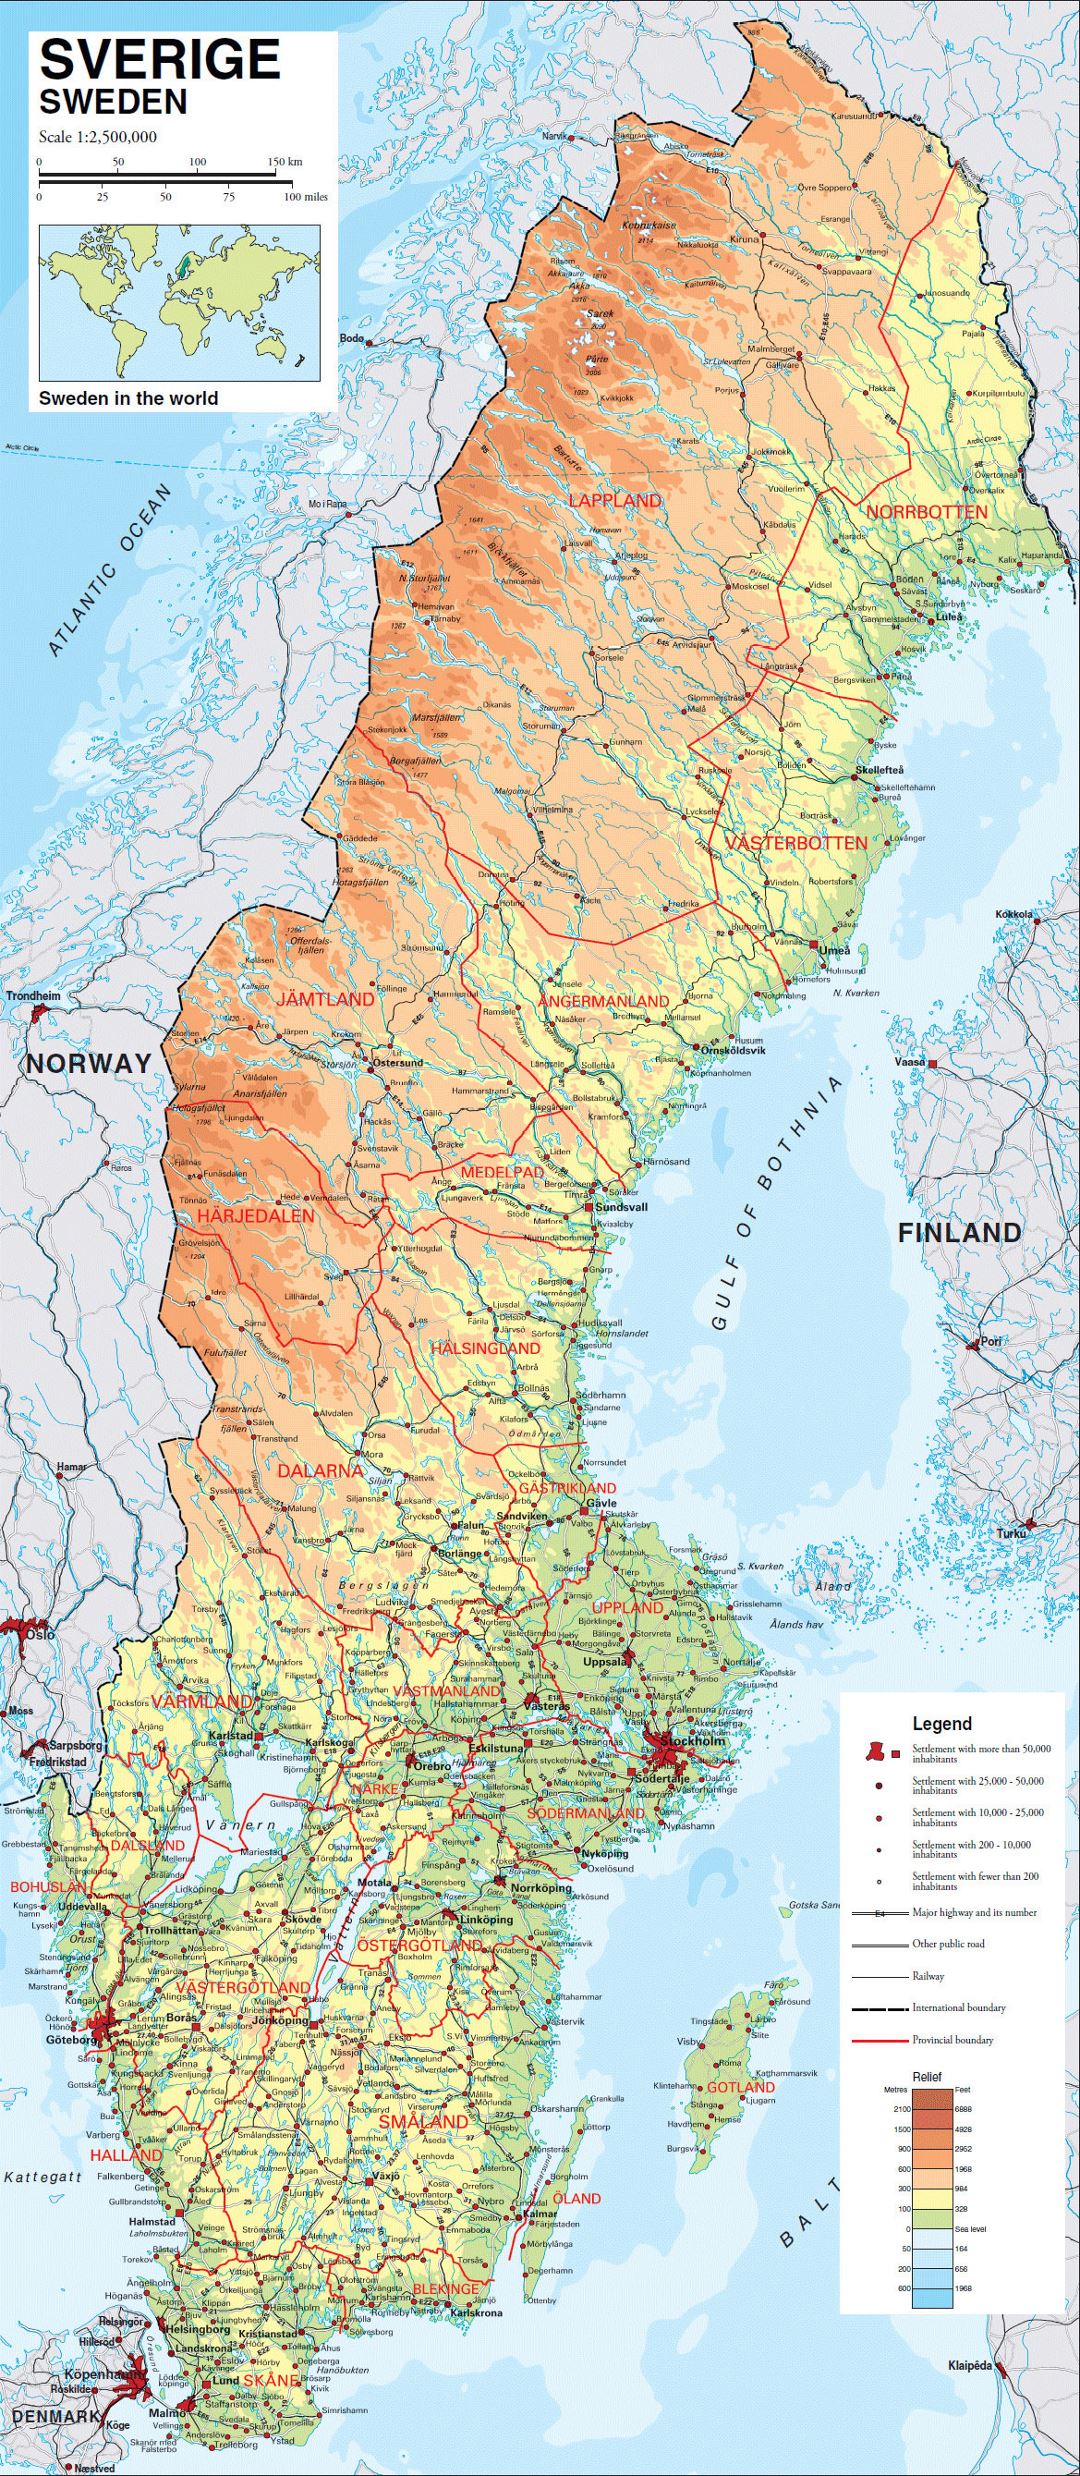 Grande mapa físico de Suecia con carreteras, ferrocarriles y ciudades